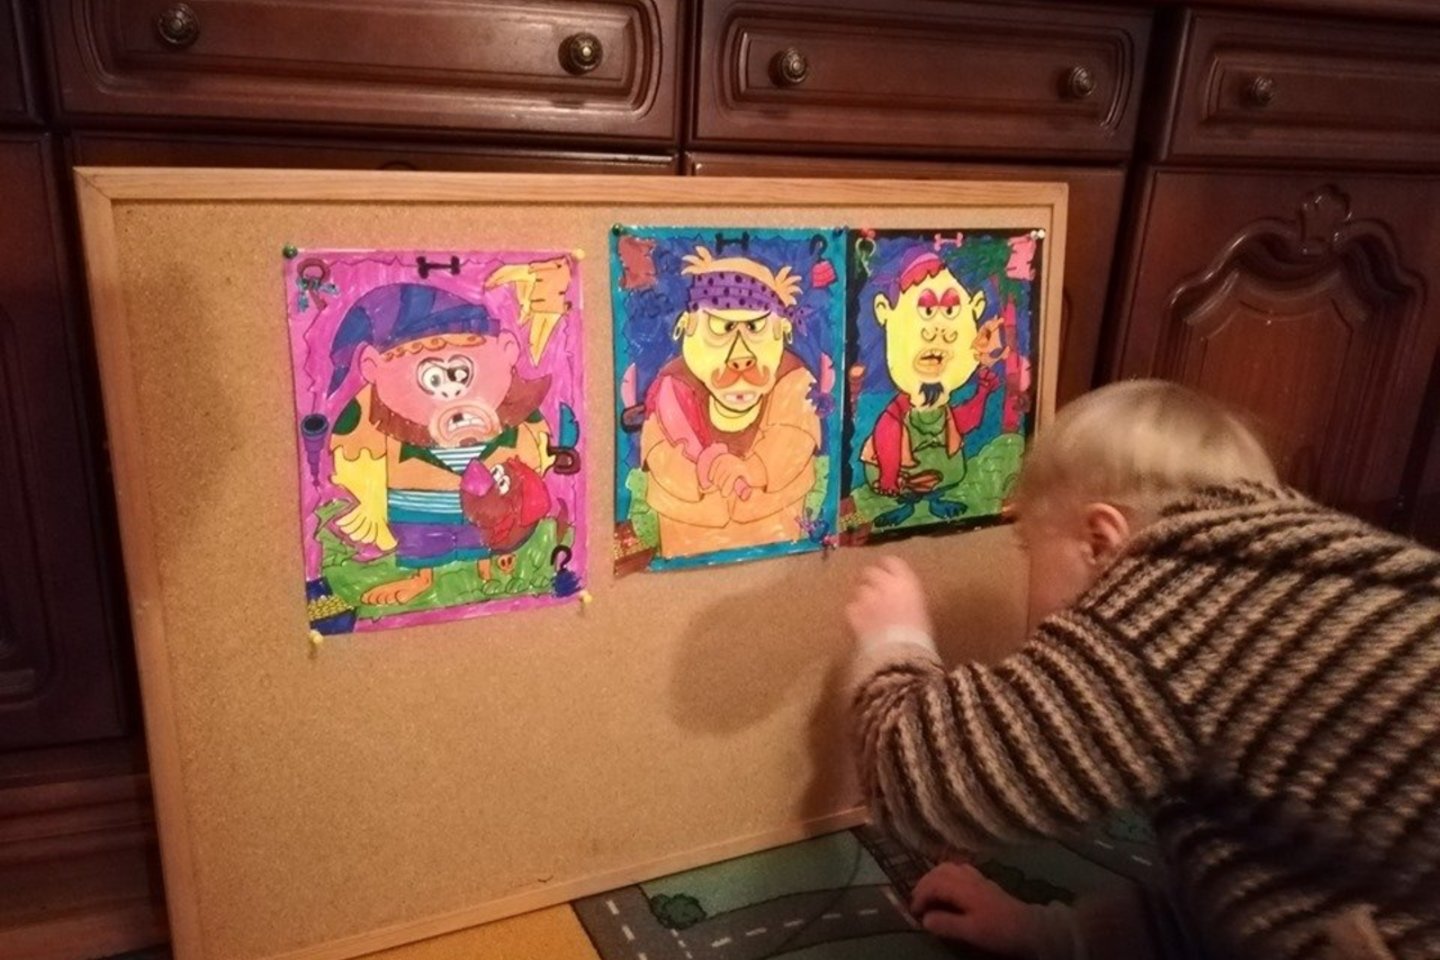   Menininkų sūnus labai mėgsta piešti ir spalvinti.<br> Asmeninio archyvo nuotr.